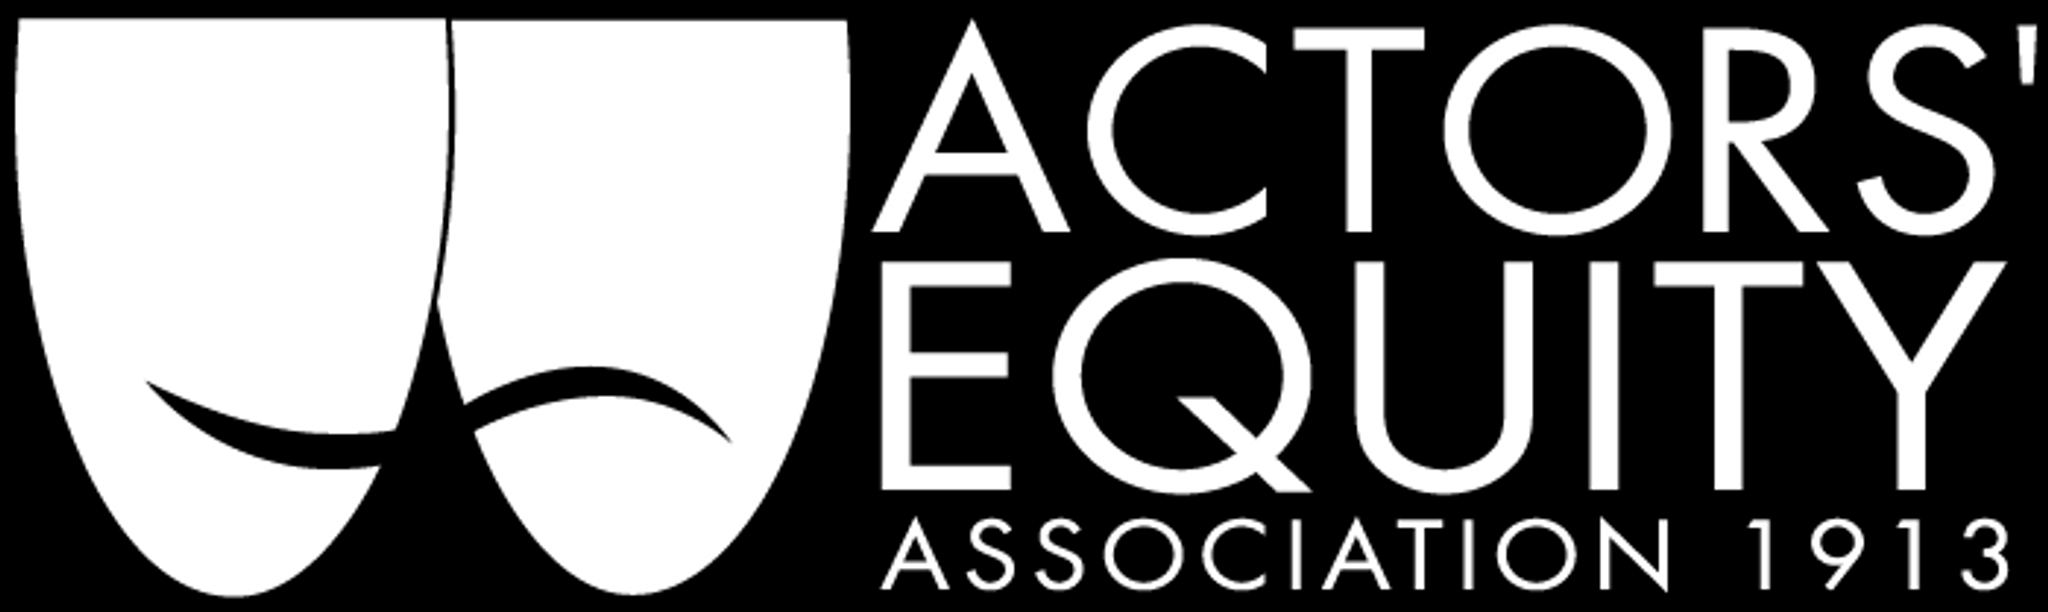 Actors' Equity logo